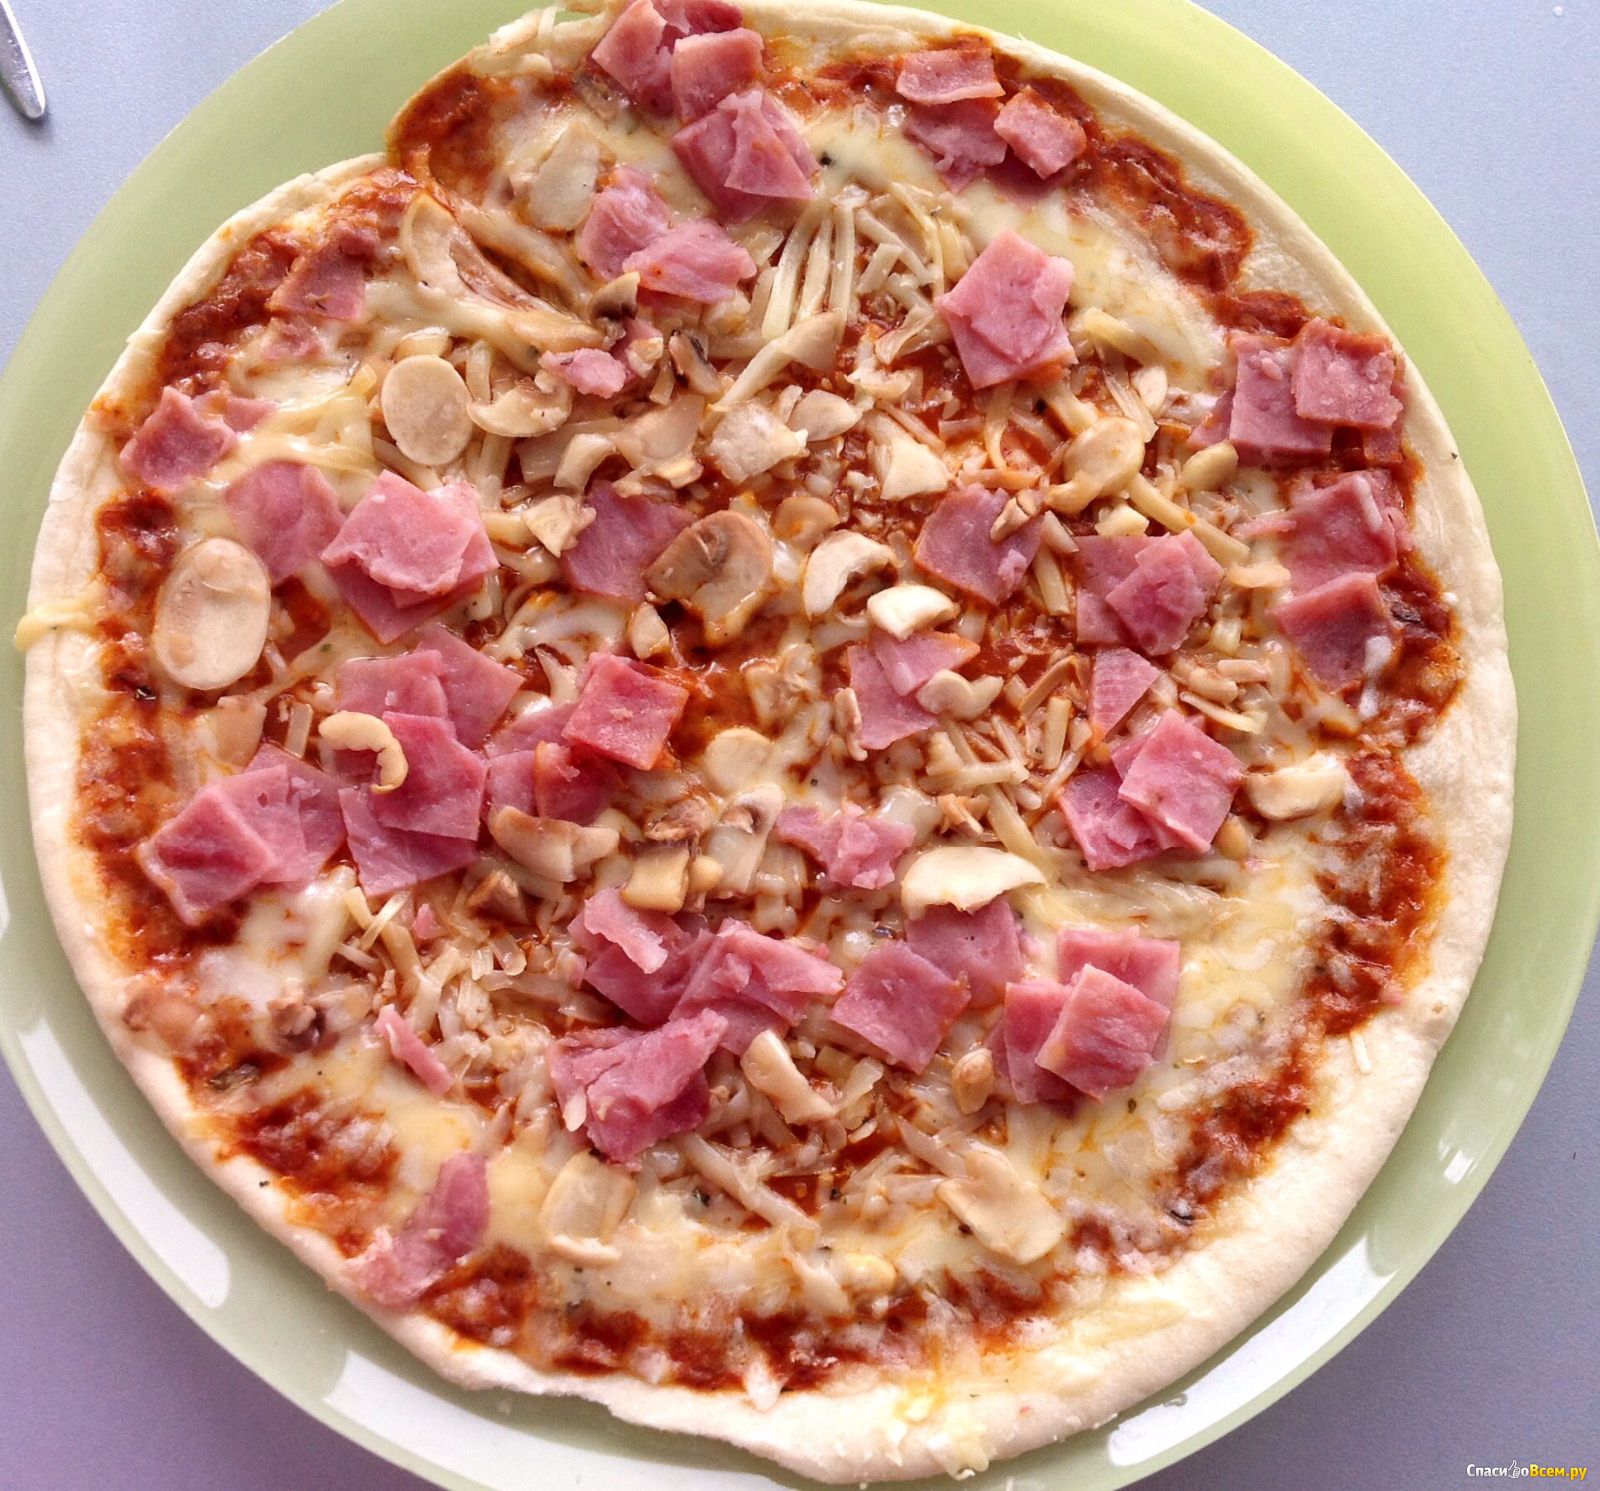 цезарь пицца замороженная с ветчиной и грибами отзывы фото 106